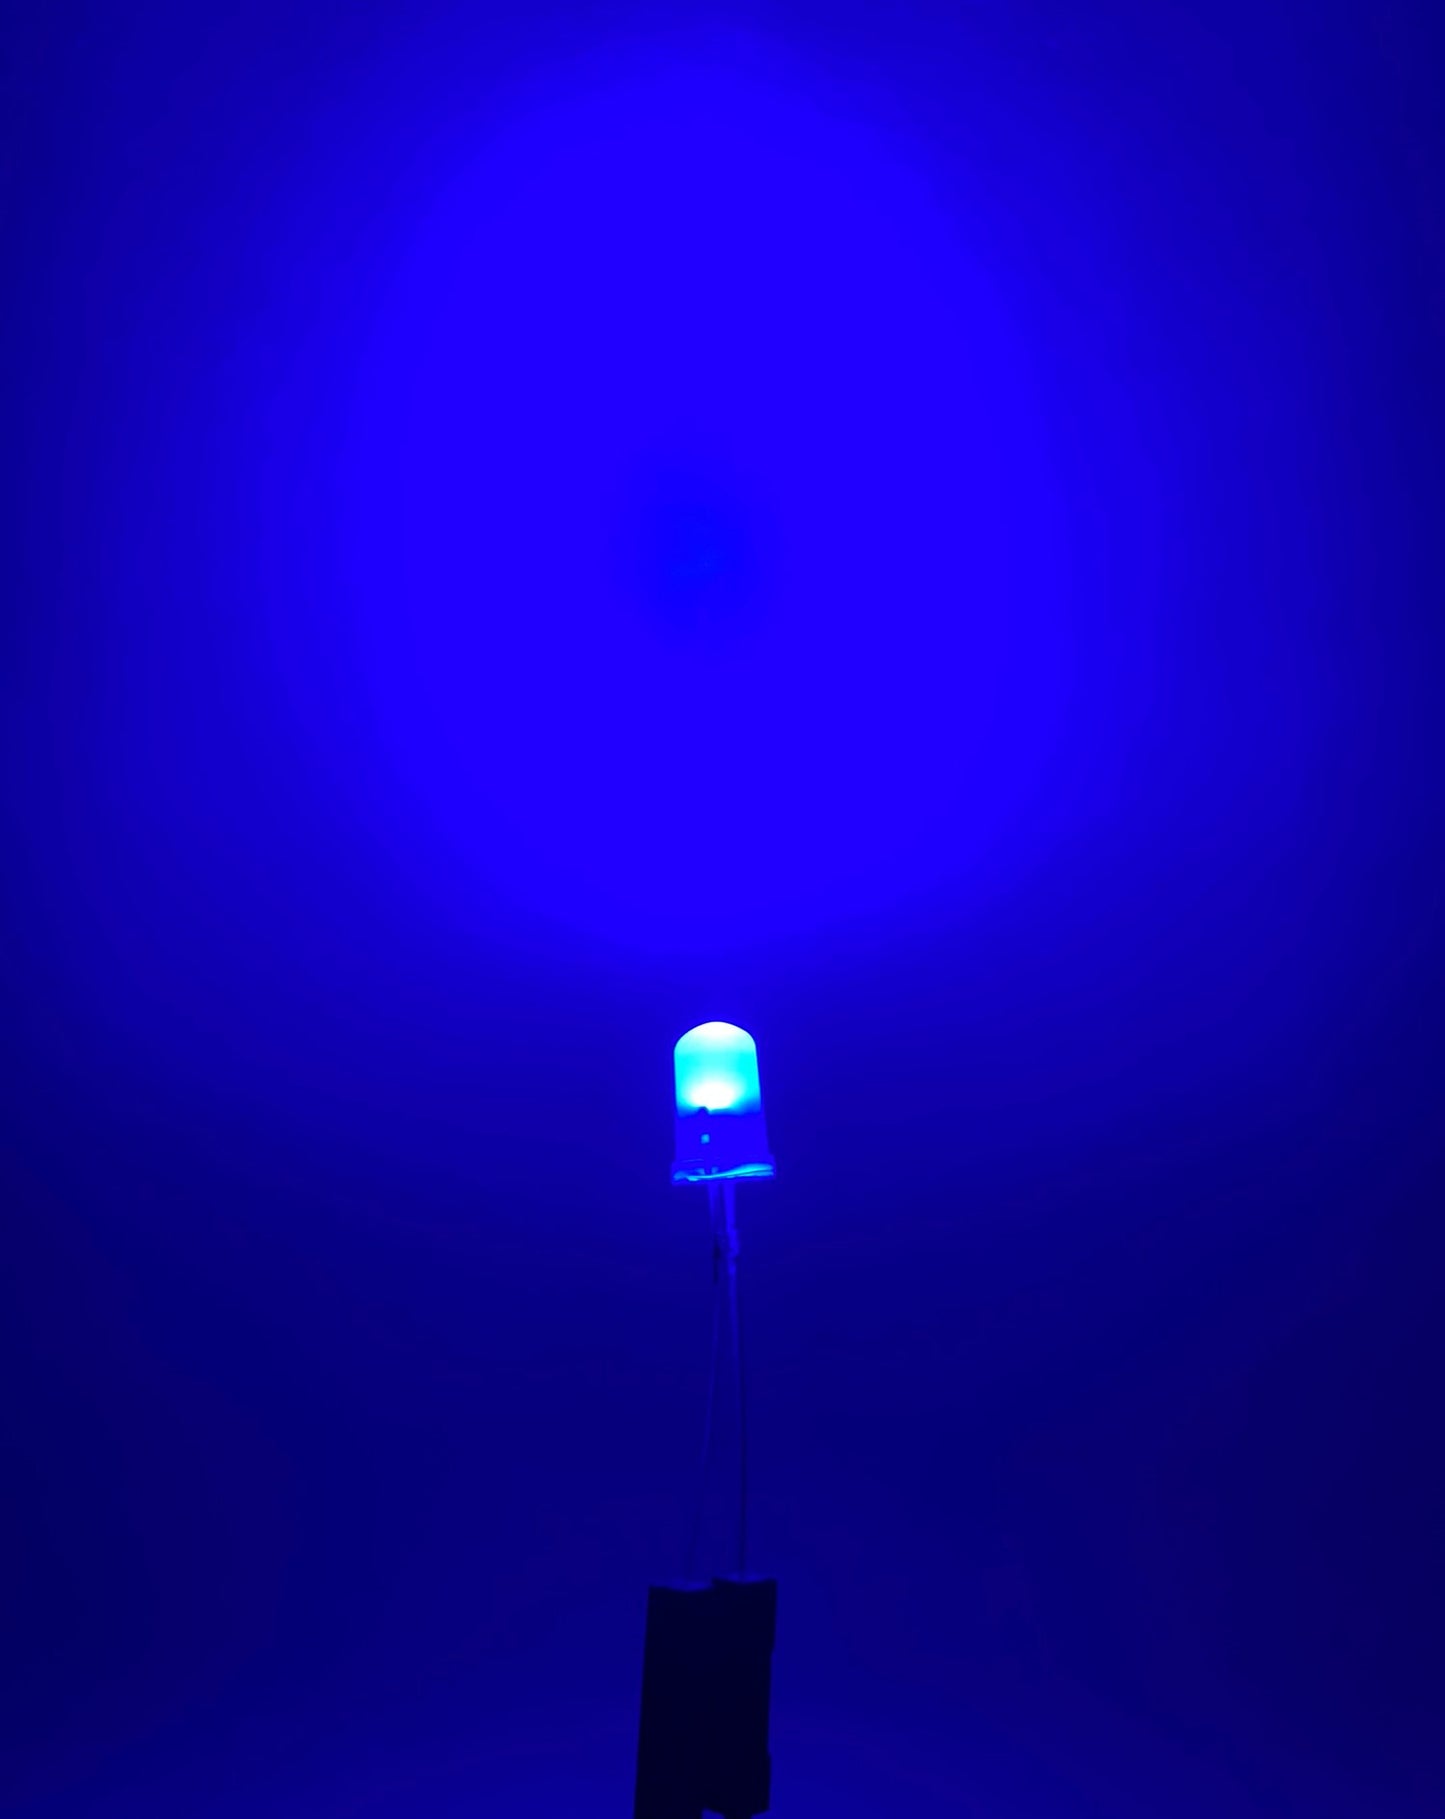 Diodo LED 5mm Camaleón RGB 2 pines, Precios mayoreo